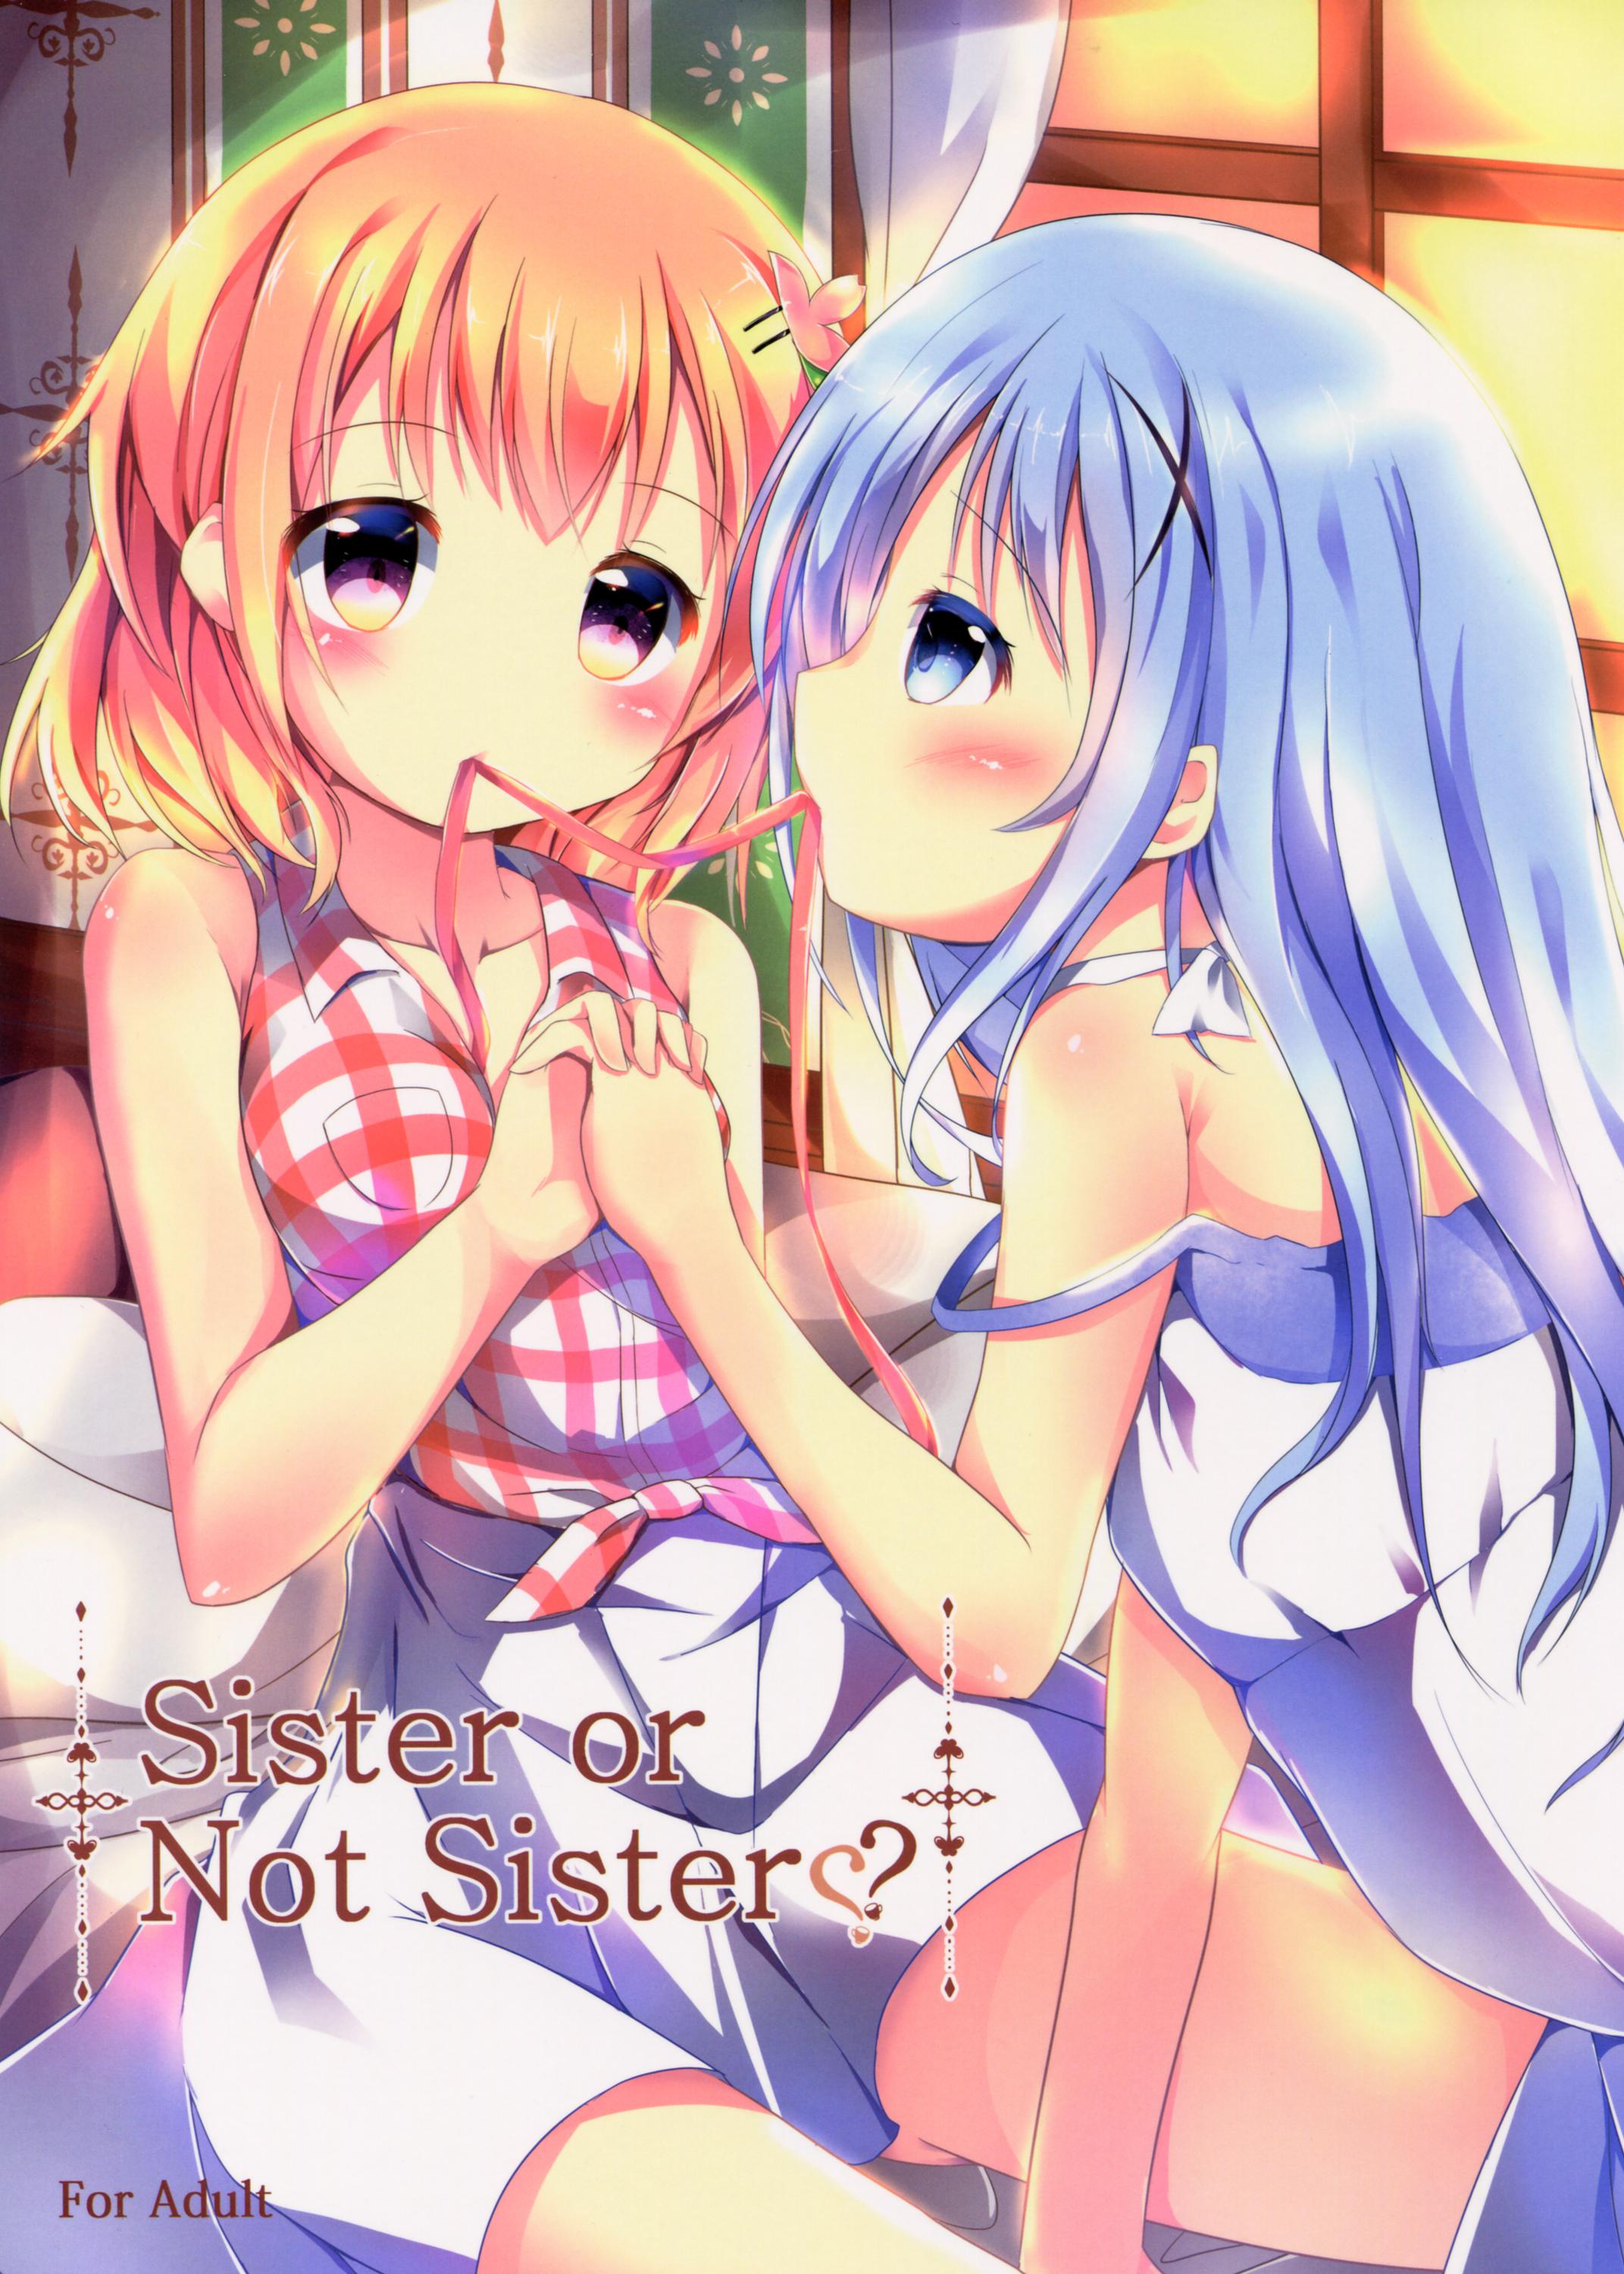 Sexo Sister or Not Sister?? - Gochuumon wa usagi desu ka Face - Page 2